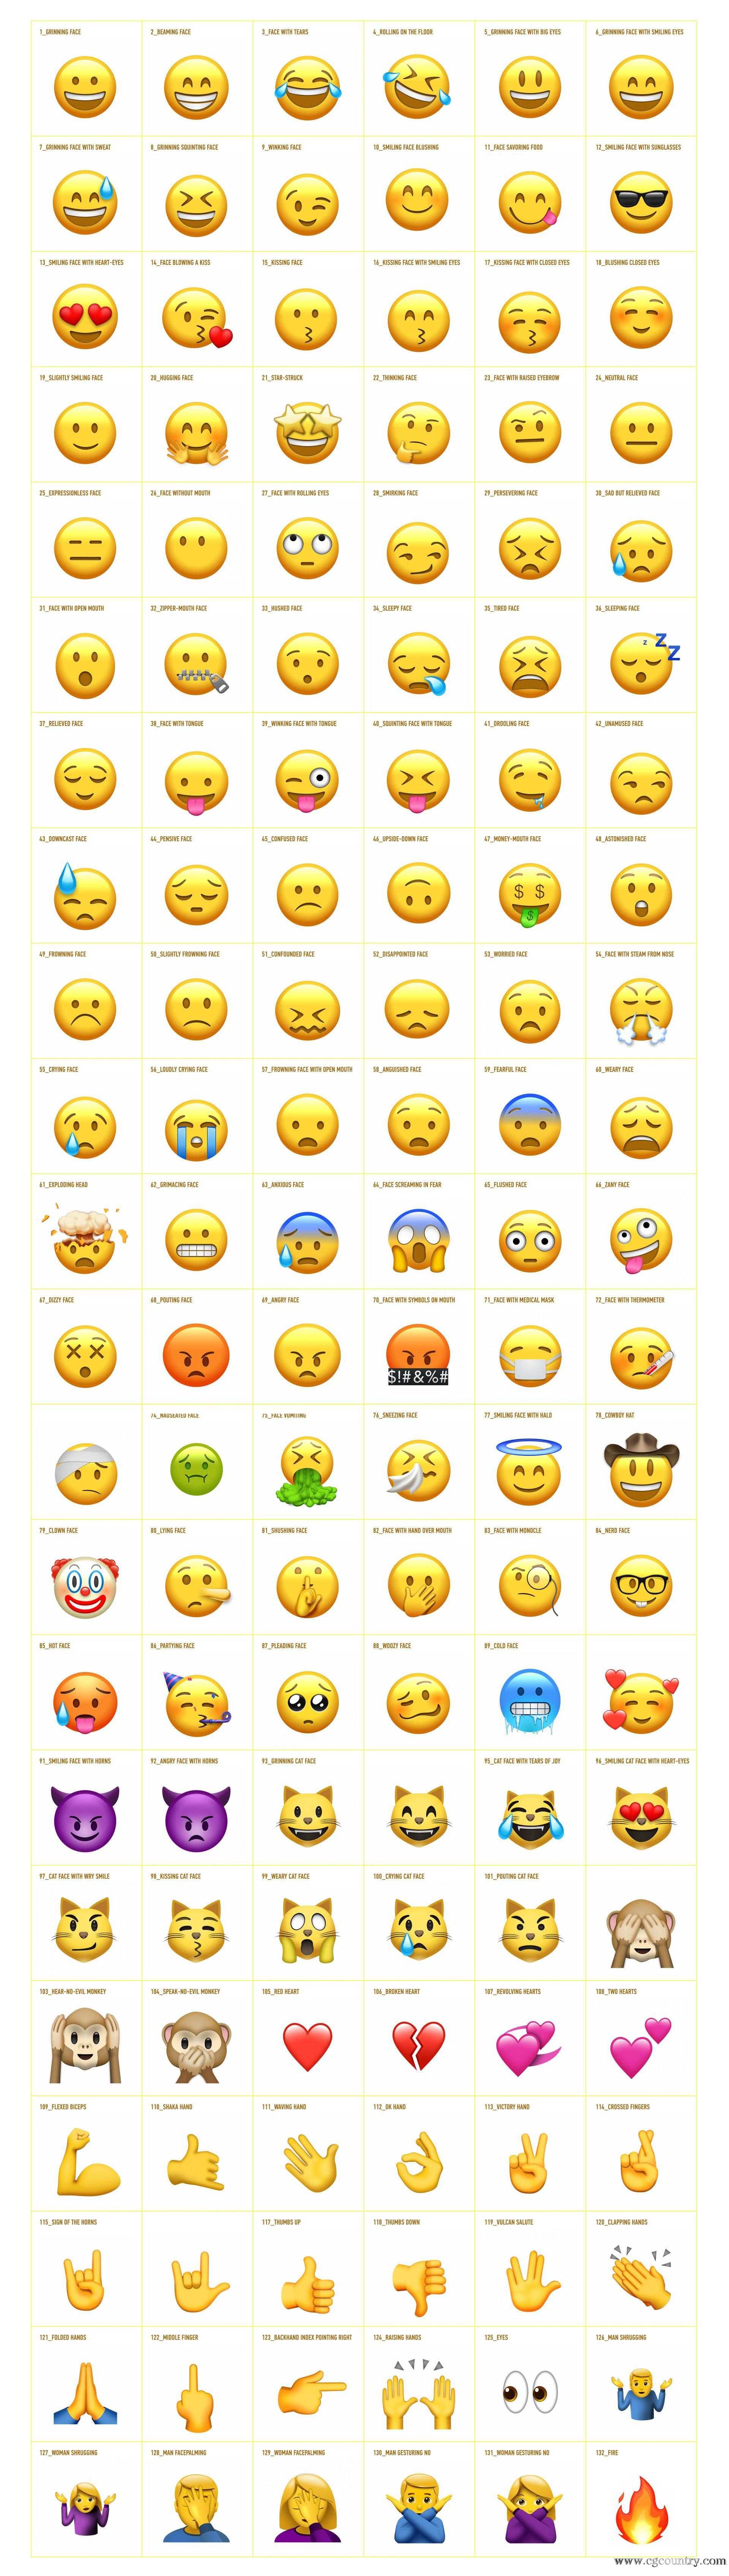 网络emoji表情动画 渲染好的视频素材  通道信息:带 alpha 透明通道